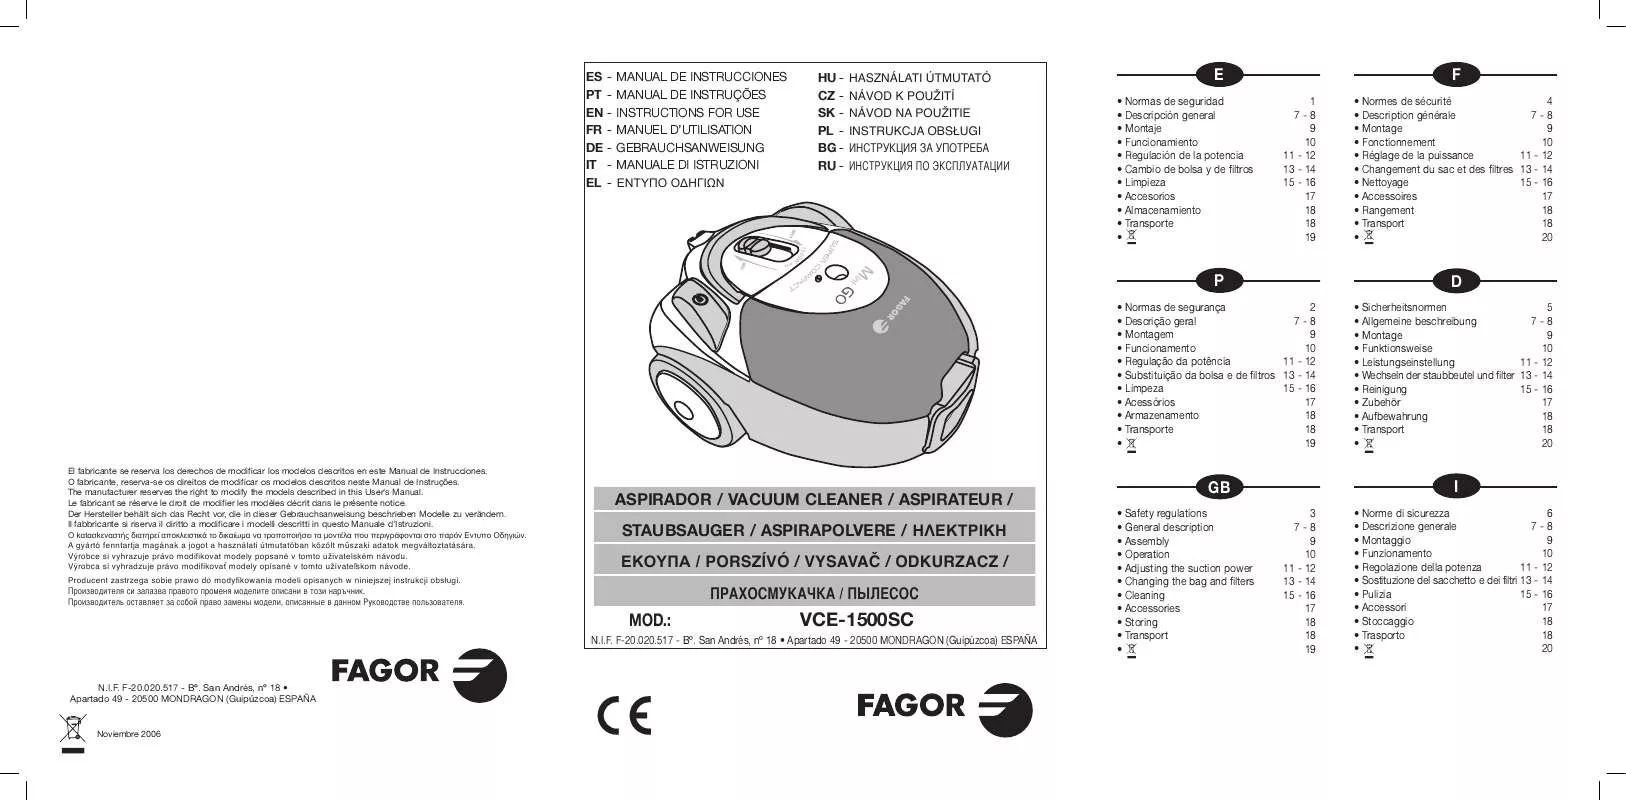 Mode d'emploi FAGOR VCE-1500SC